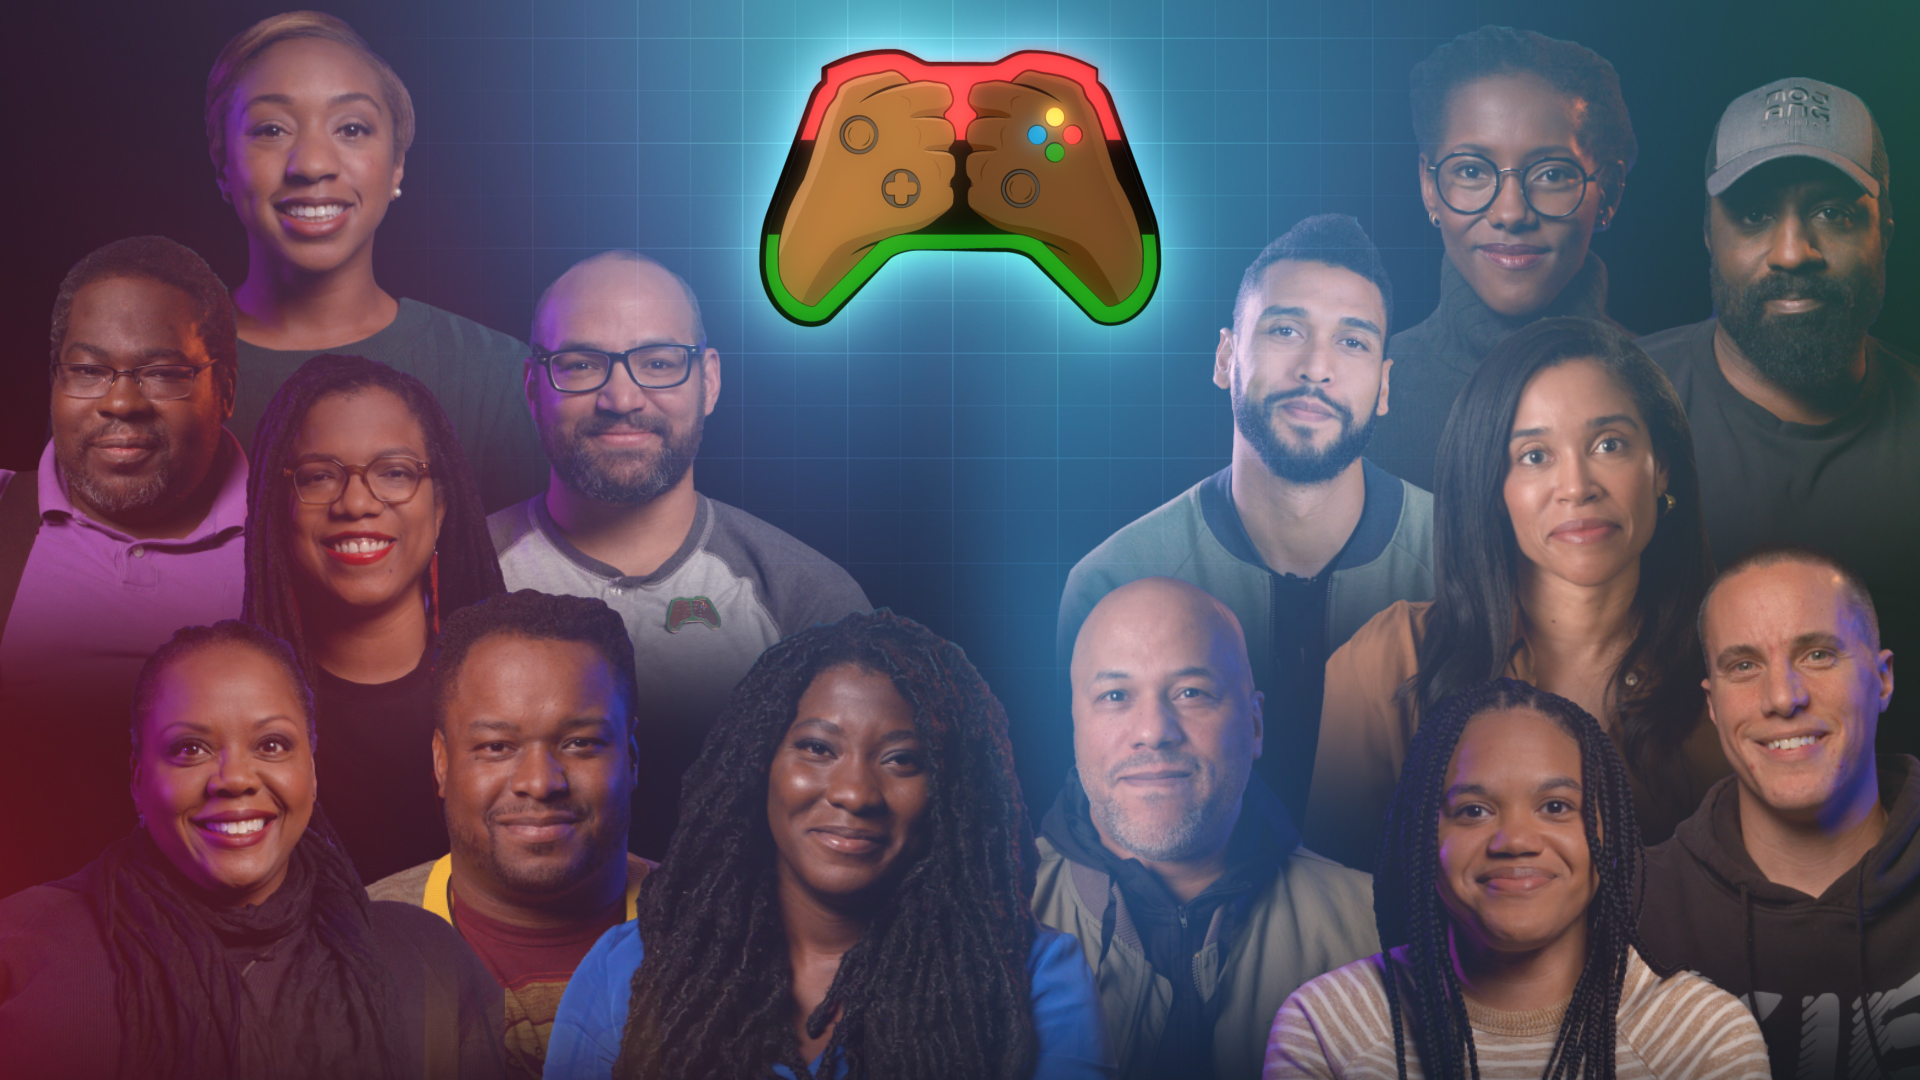 Une manette Xbox avec deux mains fermées dessus avec différents tons de peau et les mots "Project Amplify" sur un arrière-plan avec les images de profil de 14 personnes.